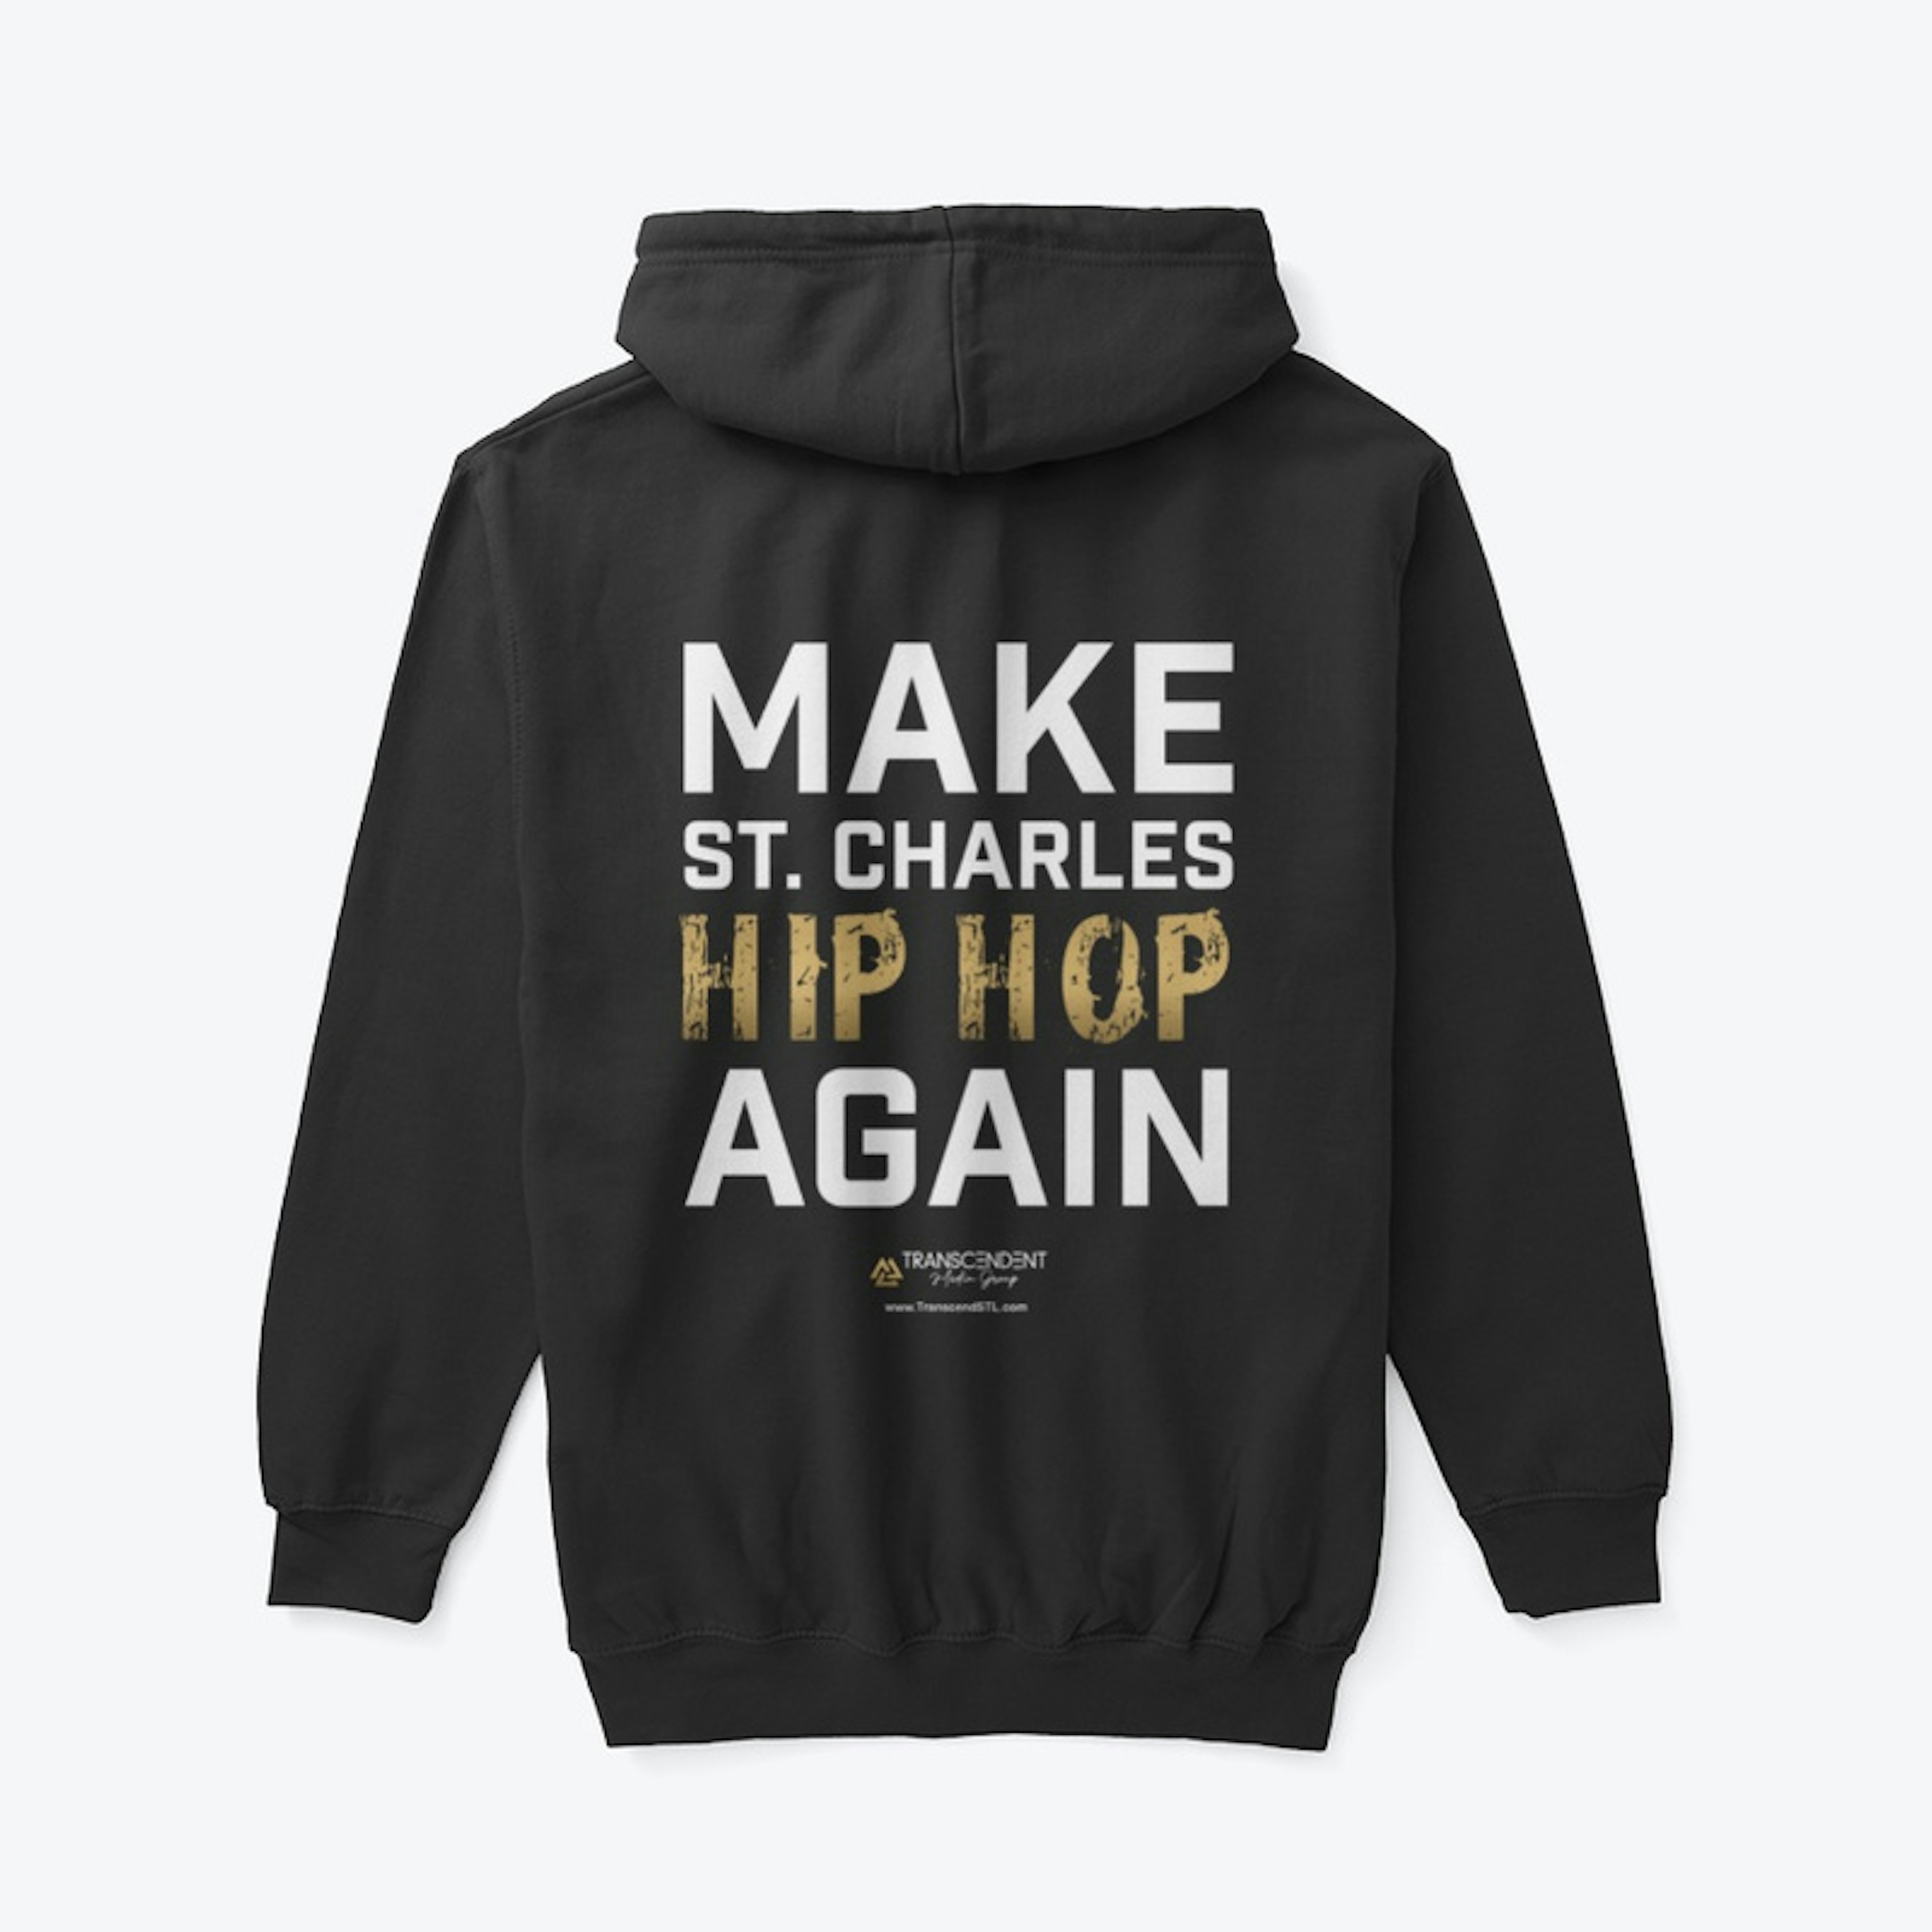 Make St. Charles Hip Hop Again